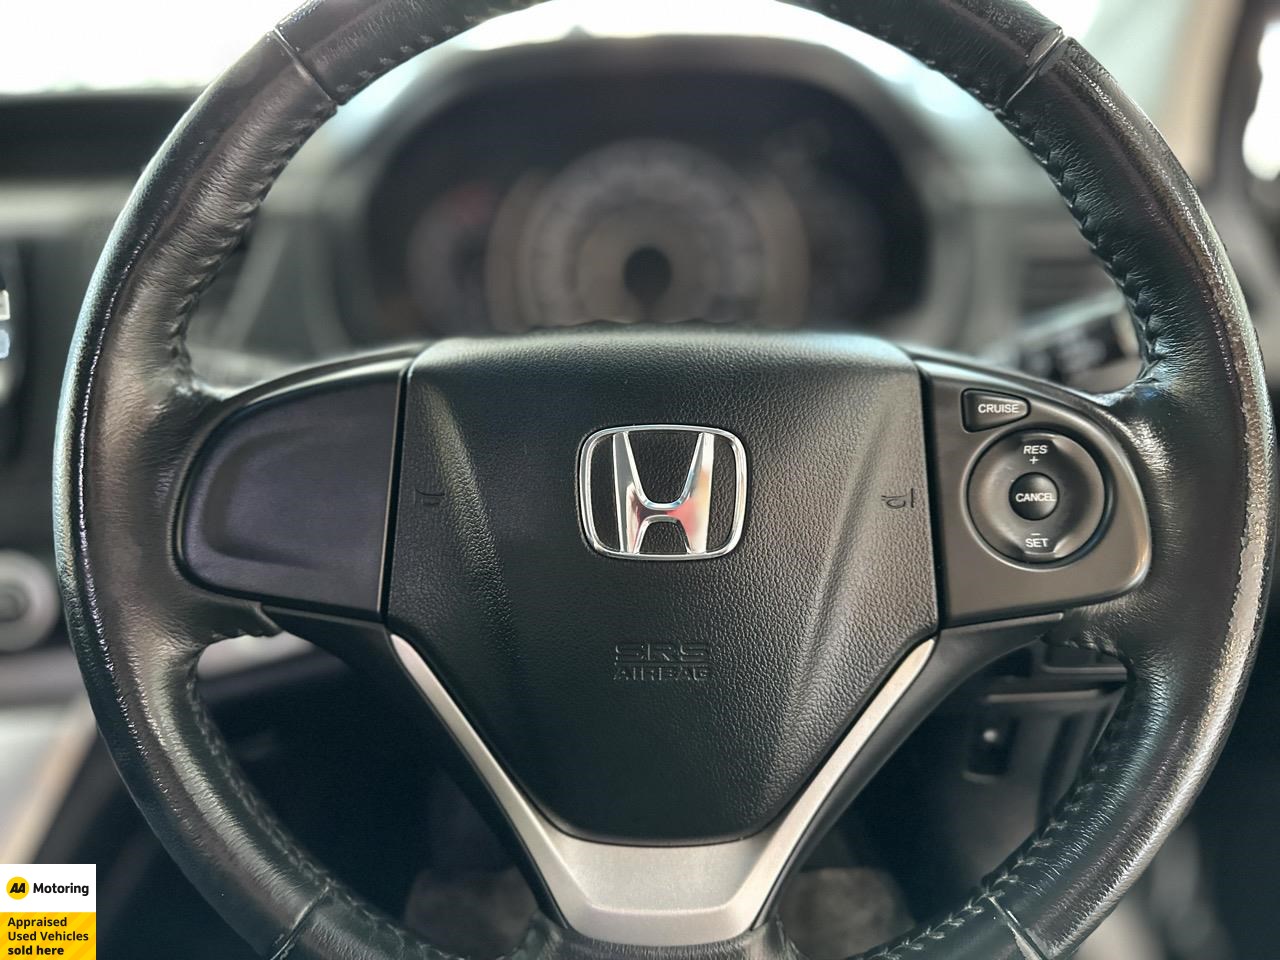 2012 Honda CR-V